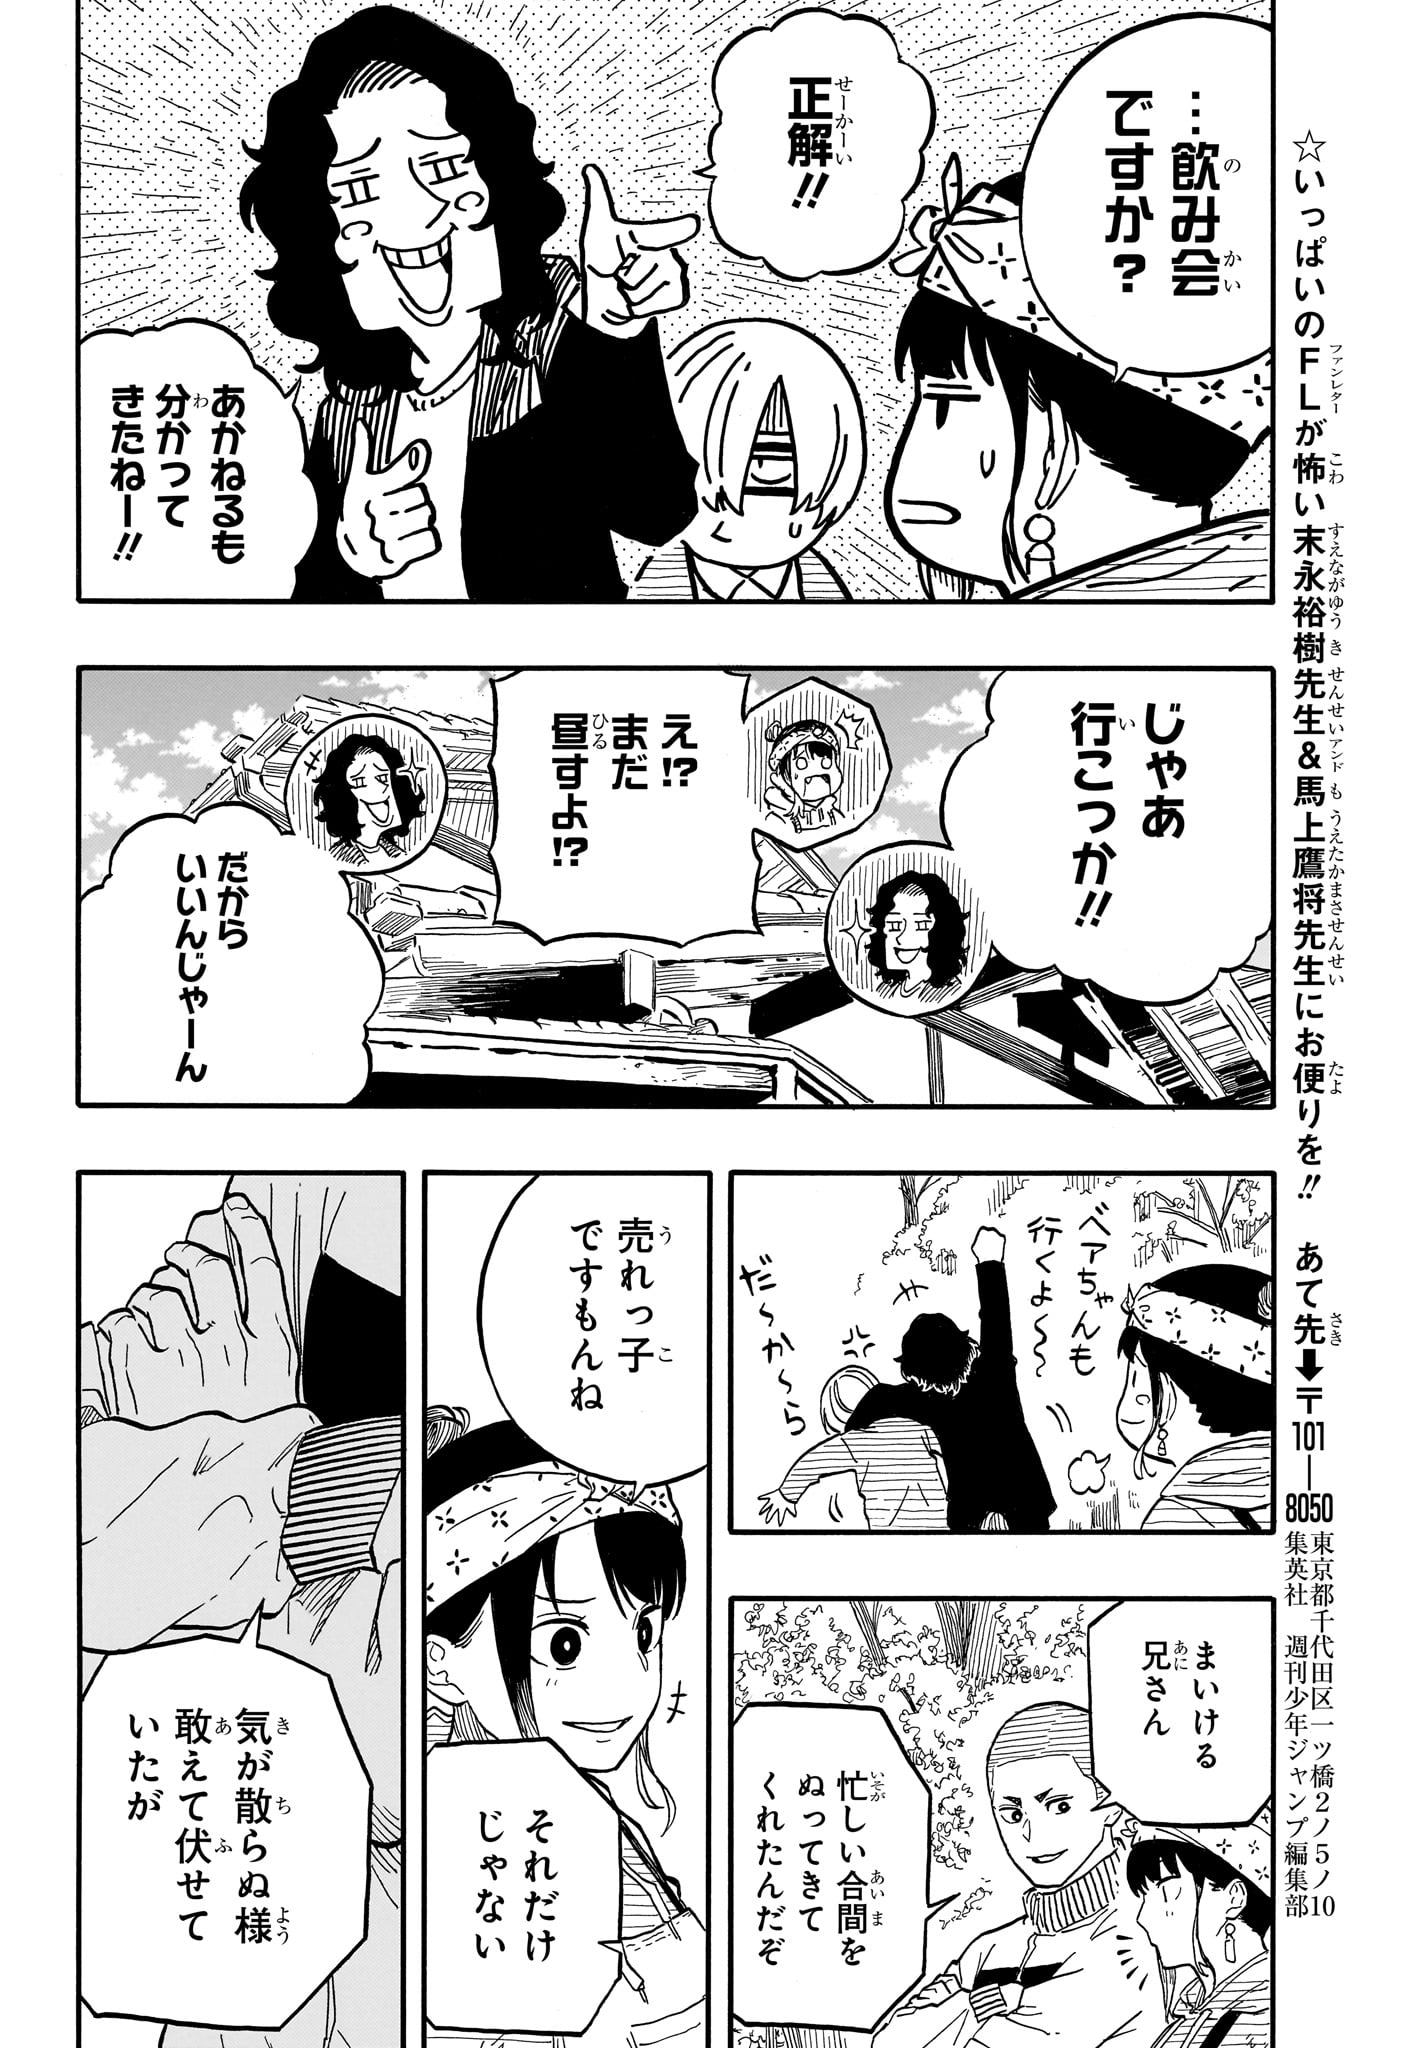 Akane-Banashi - Chapter 107 - Page 18